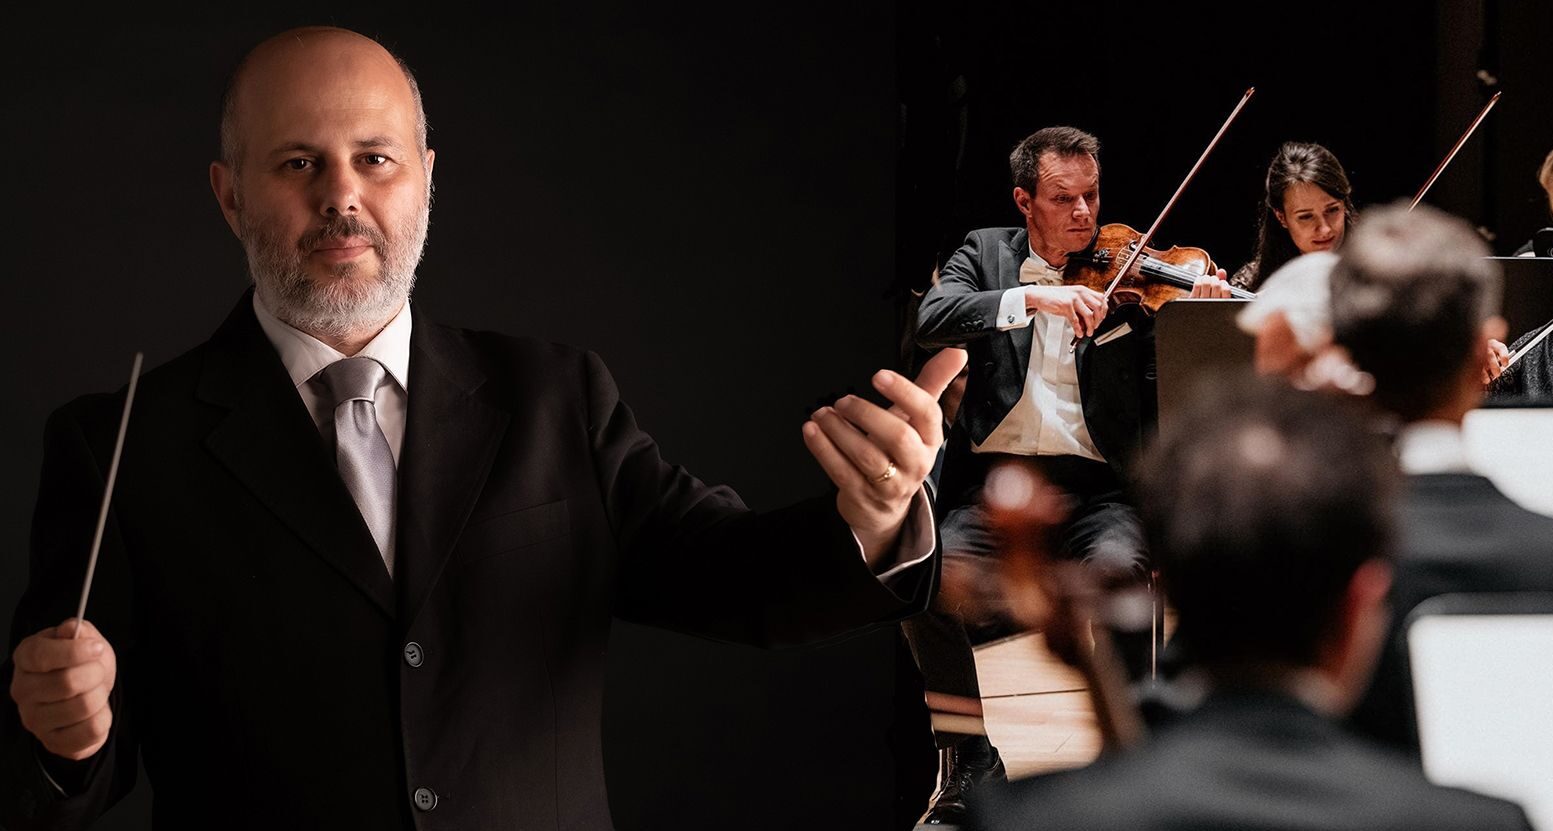 Concerto di San Silvestro a Lipsia per il direttore d’orchestra catanese Francesco Di Mauro